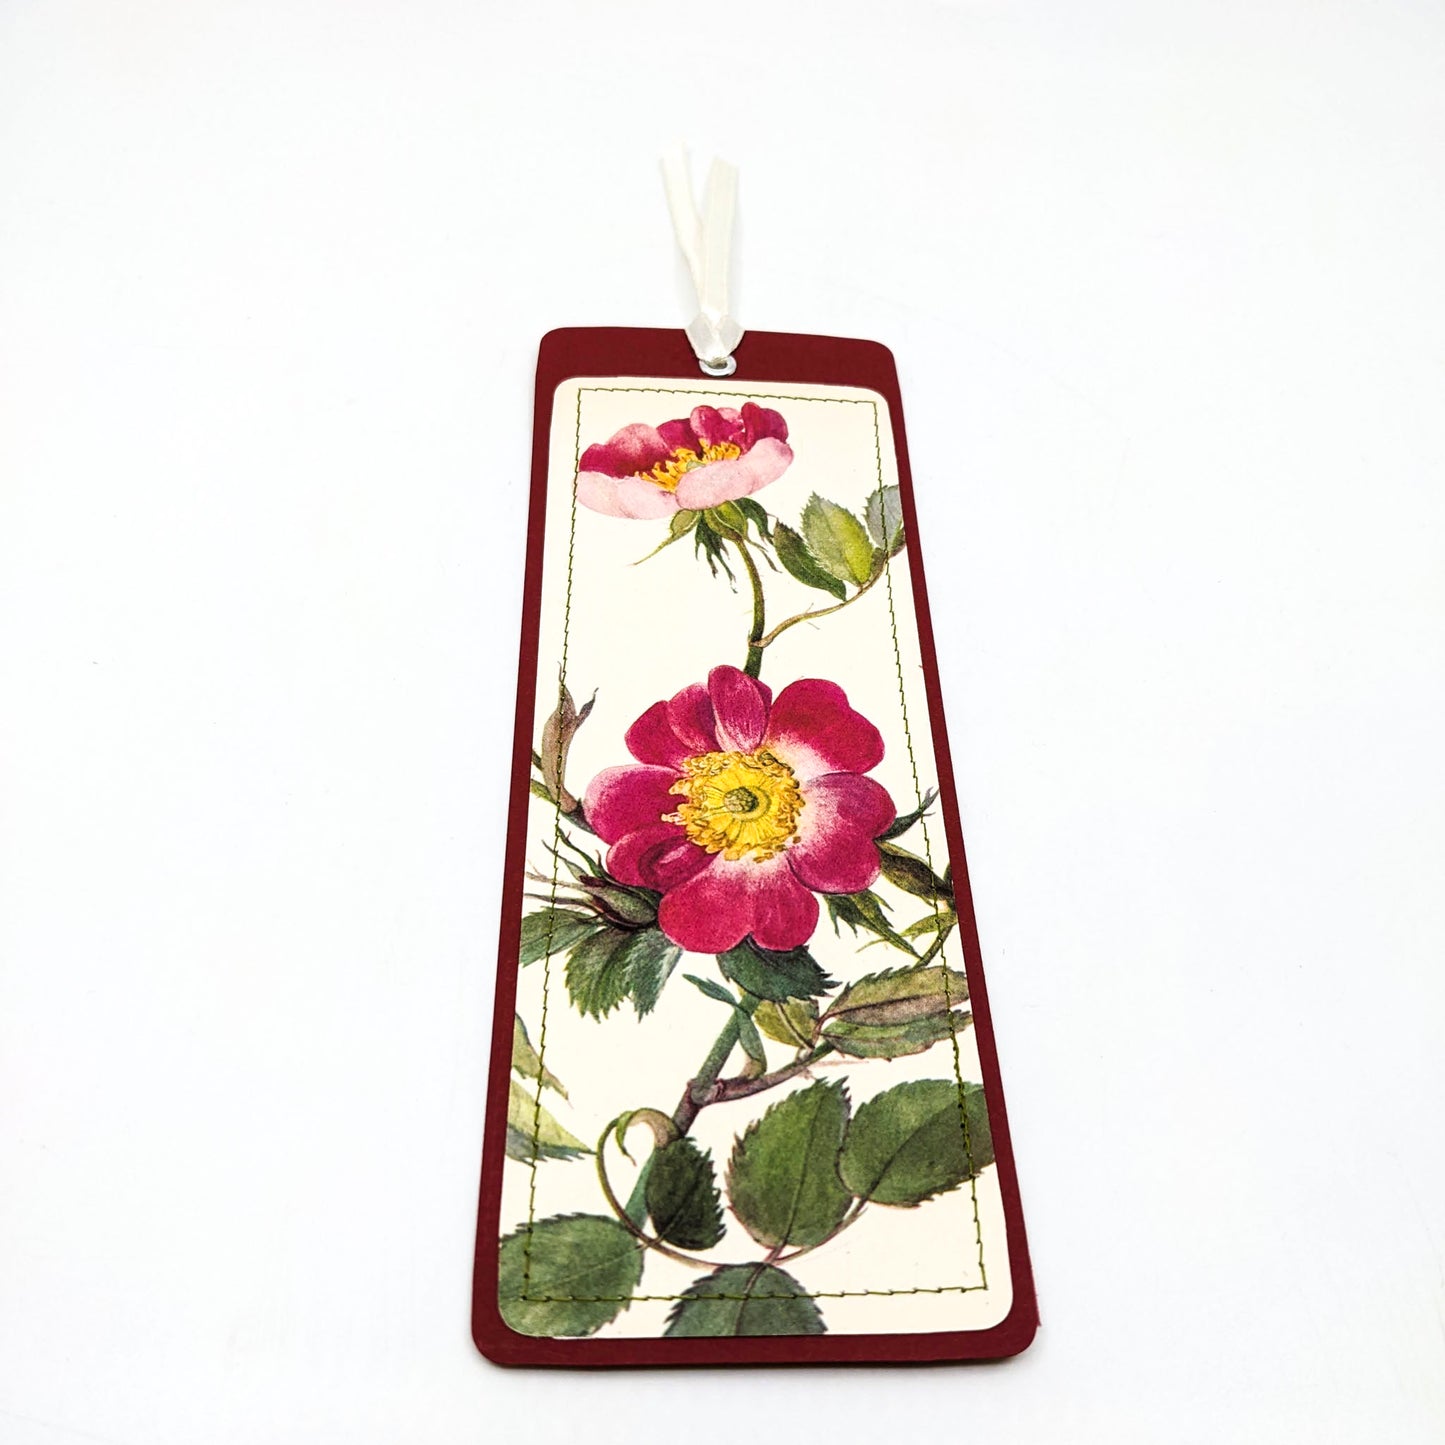 Vintage Rose Bookmarks